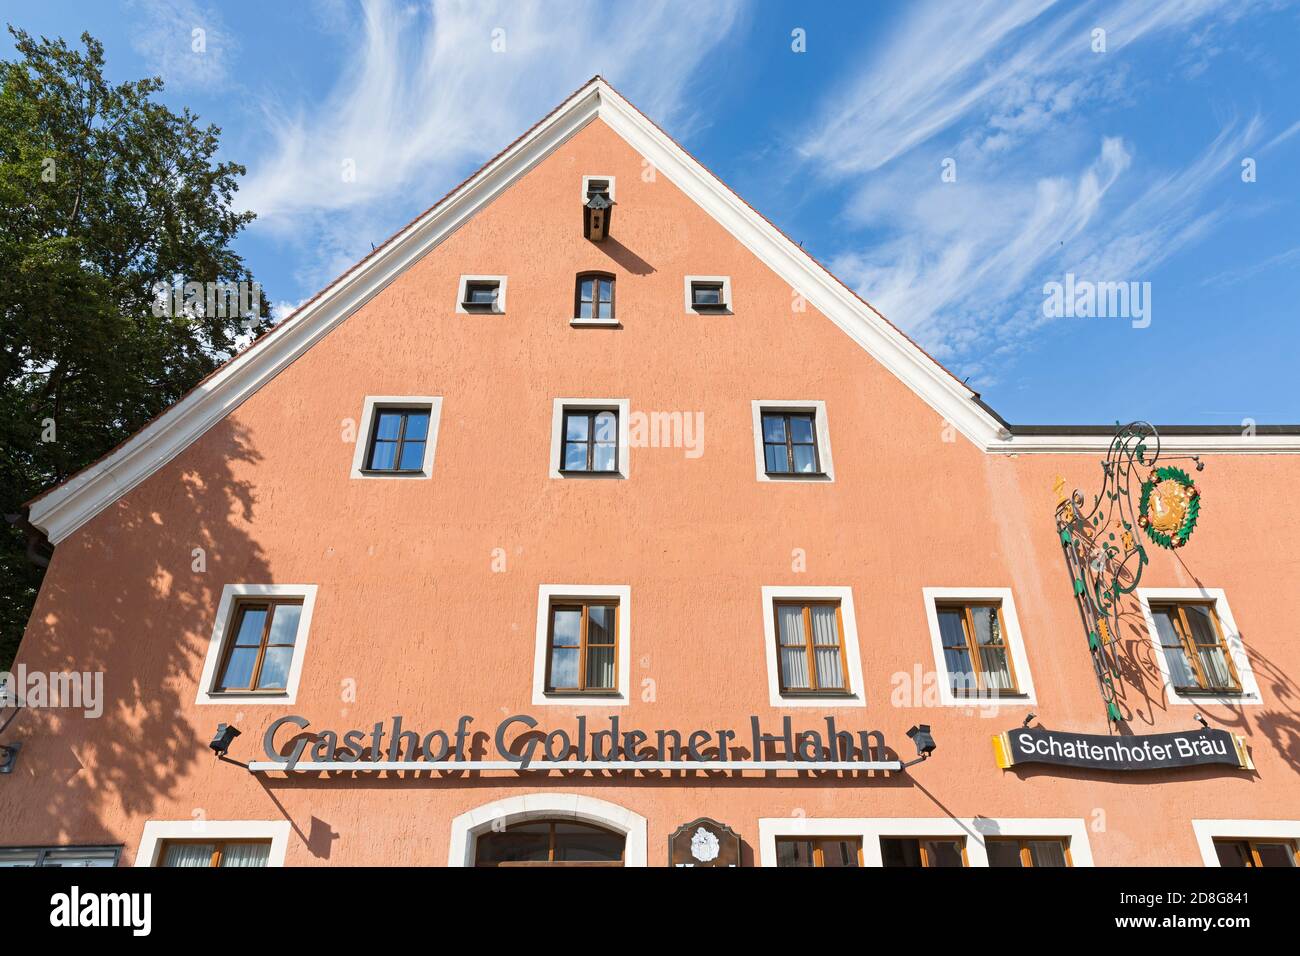 Beilngries, Hauptstrasse, Gasthof Goldener Hahn, Zunftschild Stock Photo